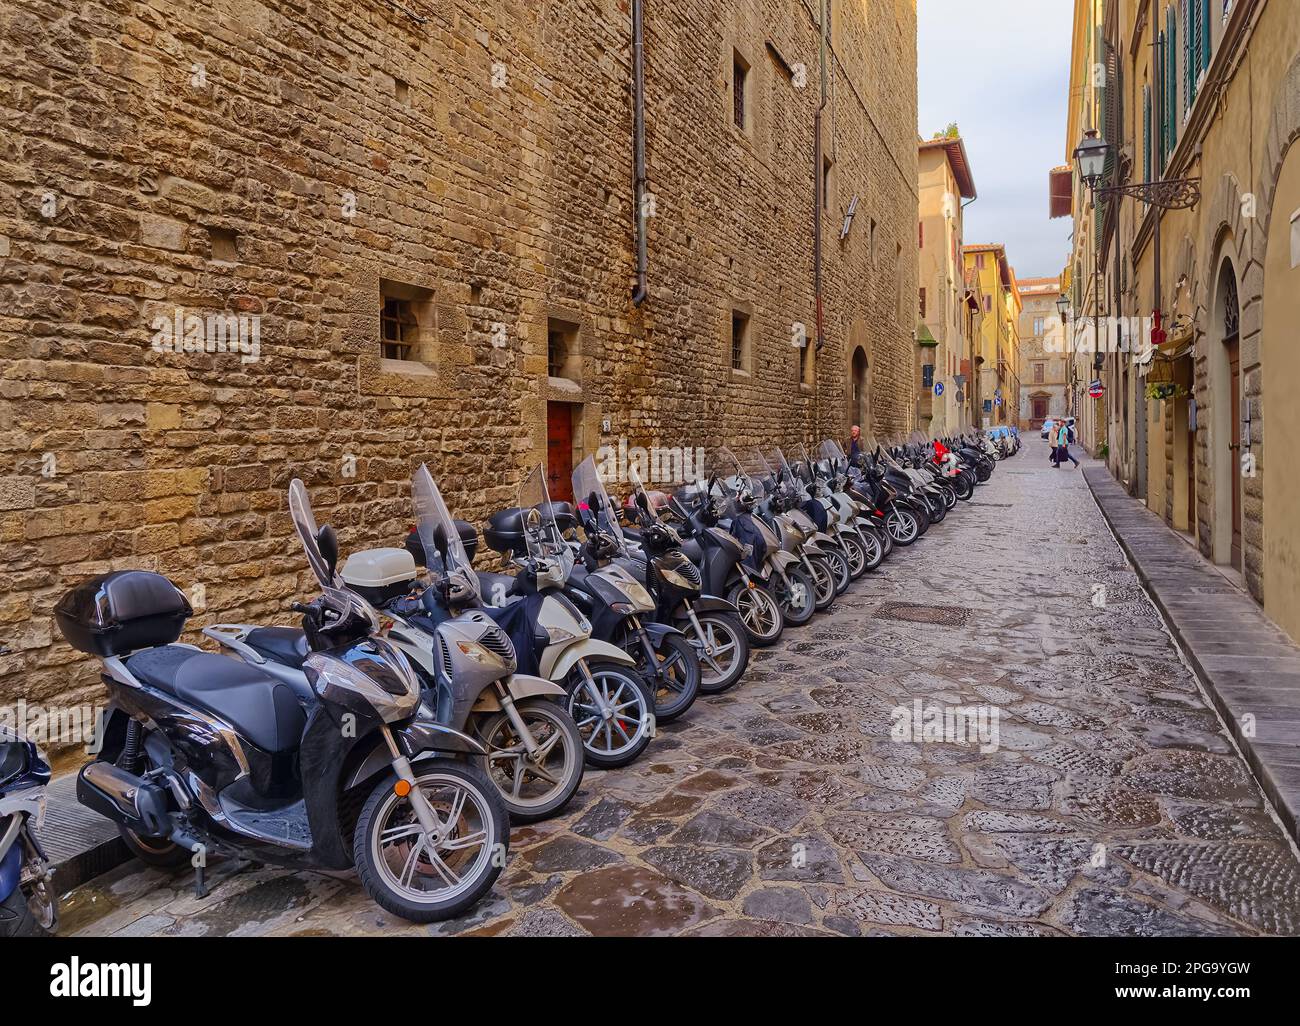 Motos garées dans une rue étroite de Florence Italie Banque D'Images